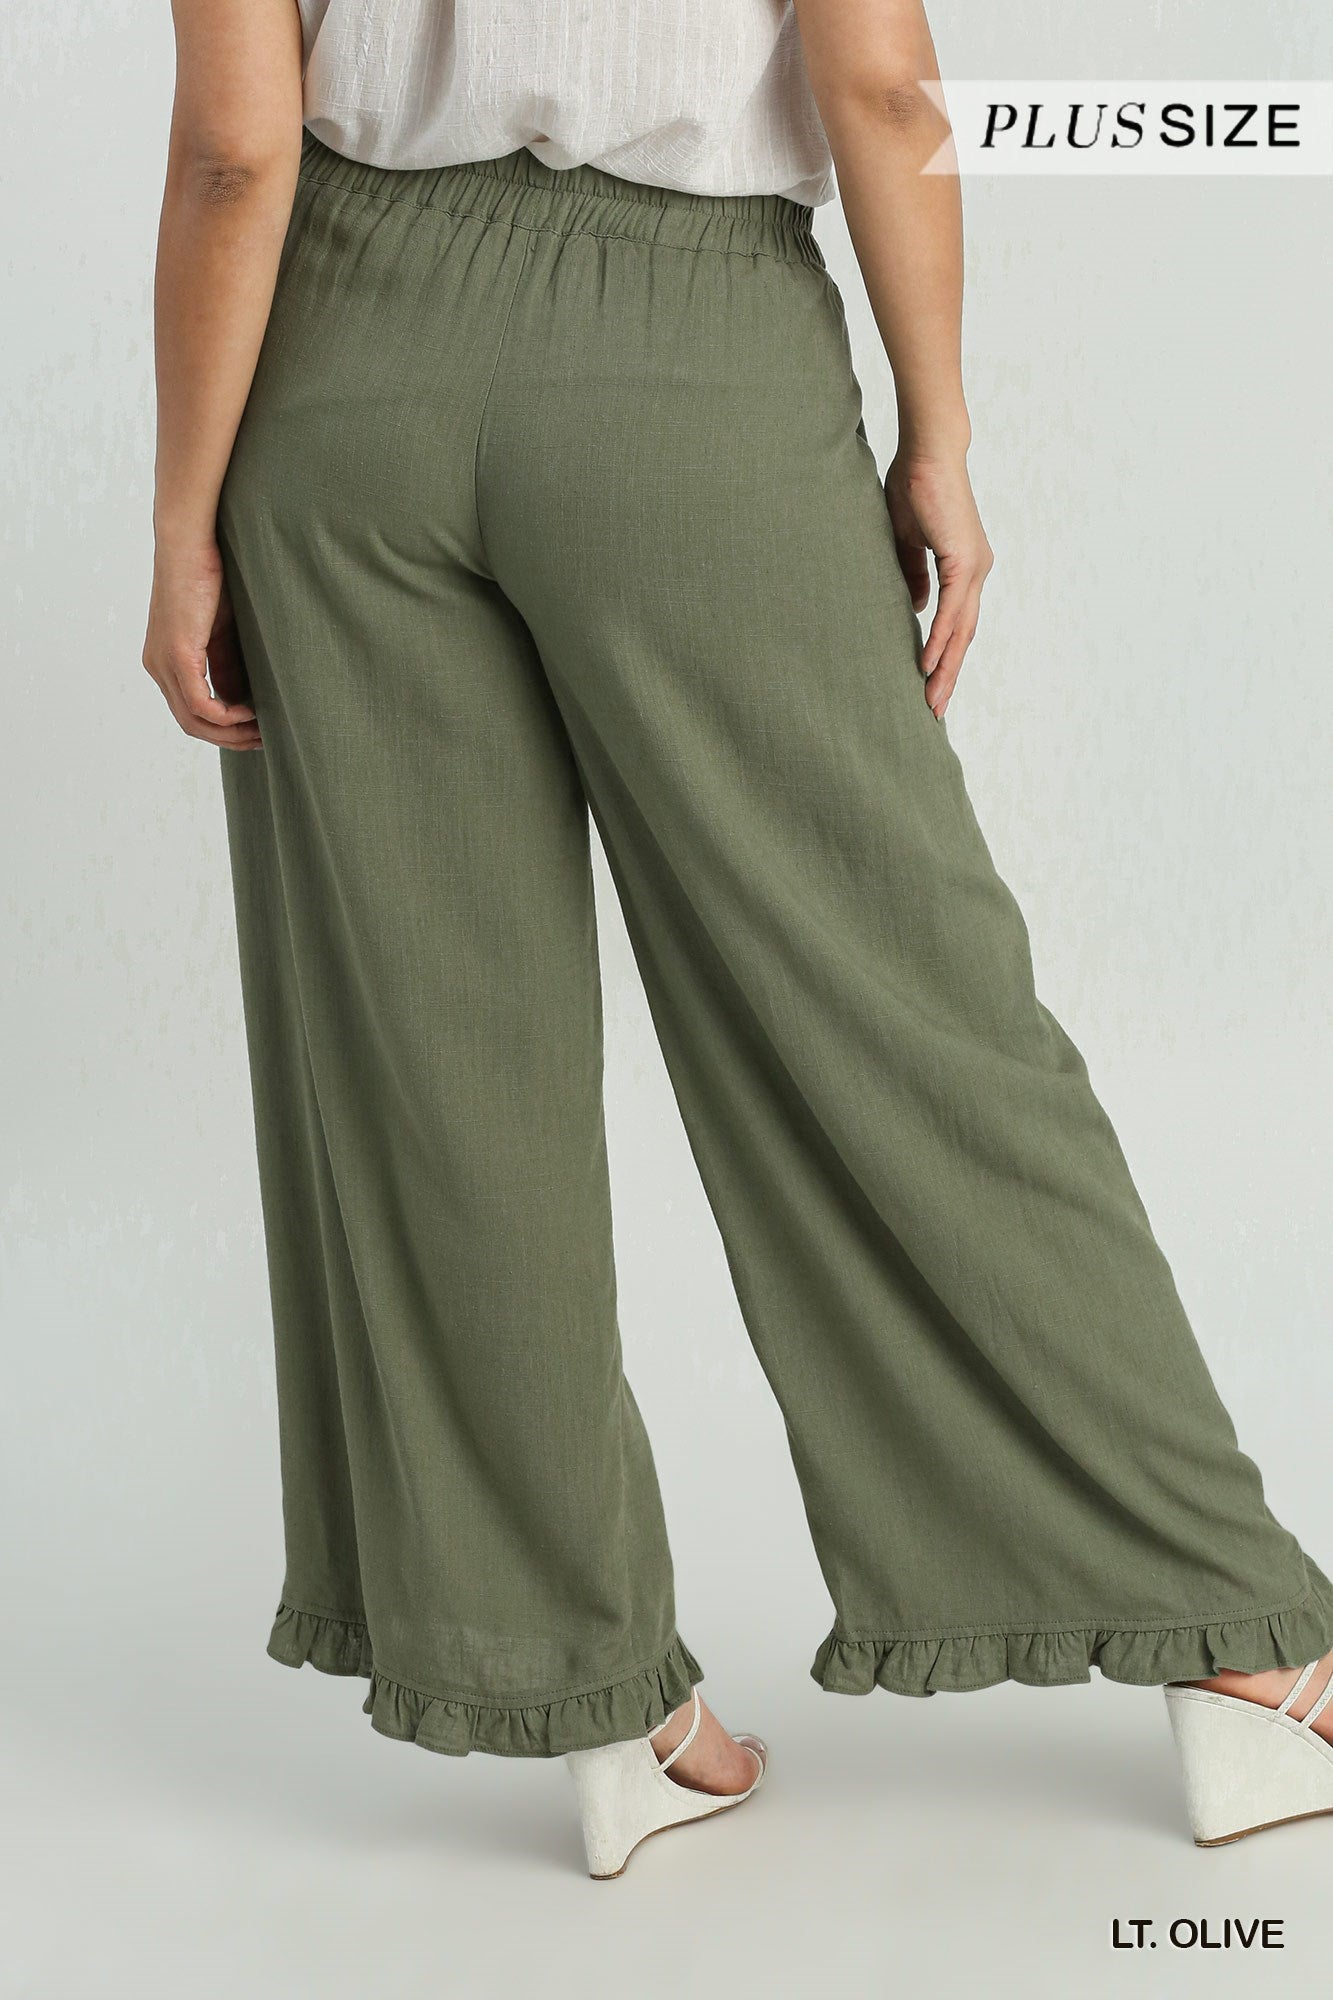 Linen Blend Elastic Waist Ruffle Hem Pants with Pockets